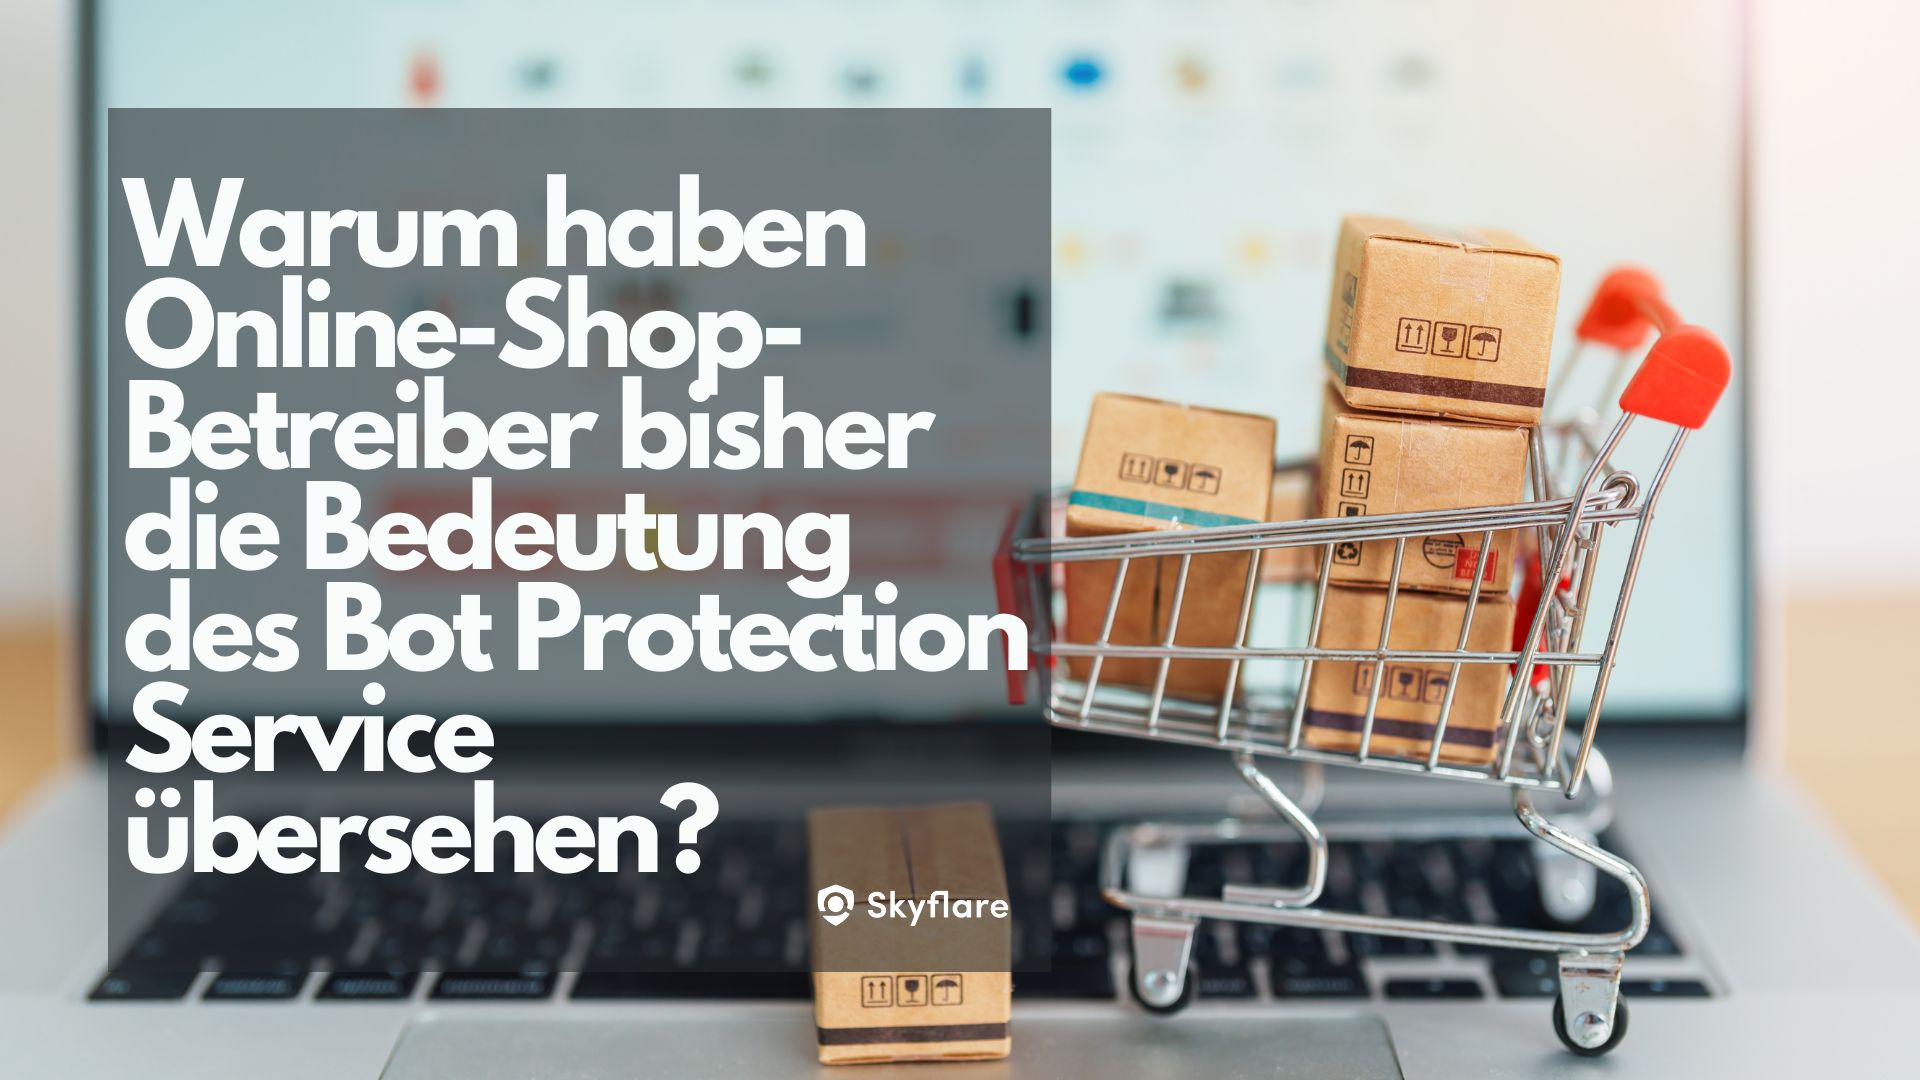 Warum haben Online-Shop-Betreiber bisher die Bedeutung des Bot-Protection-Service übersehen?